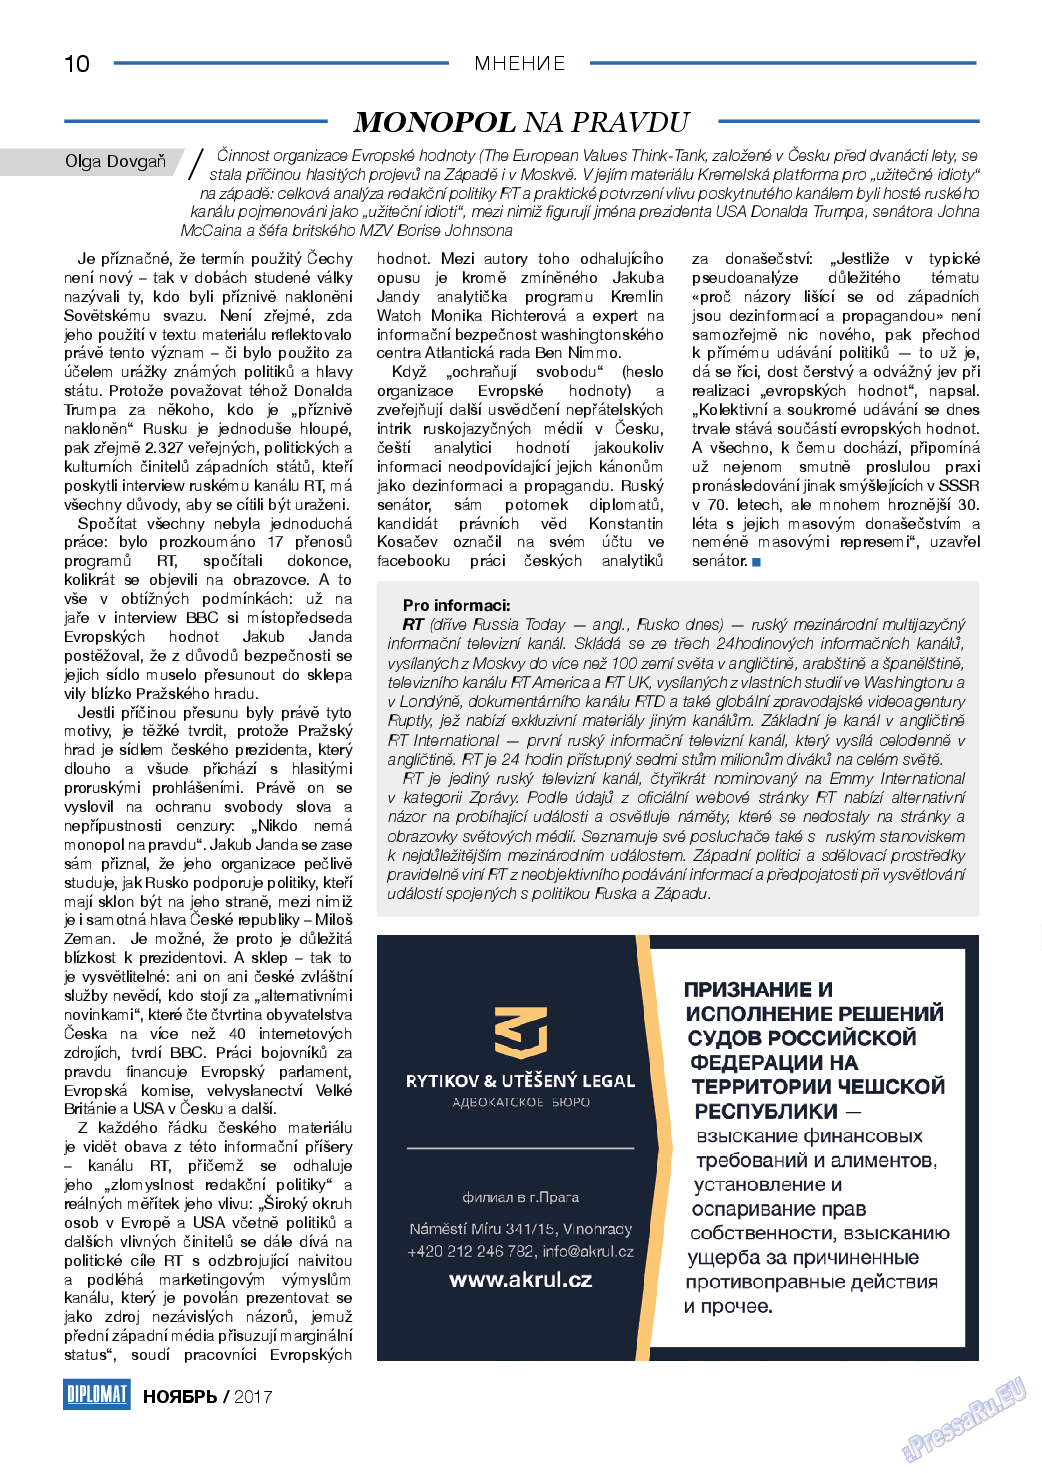 Diplomat, газета. 2017 №98 стр.10